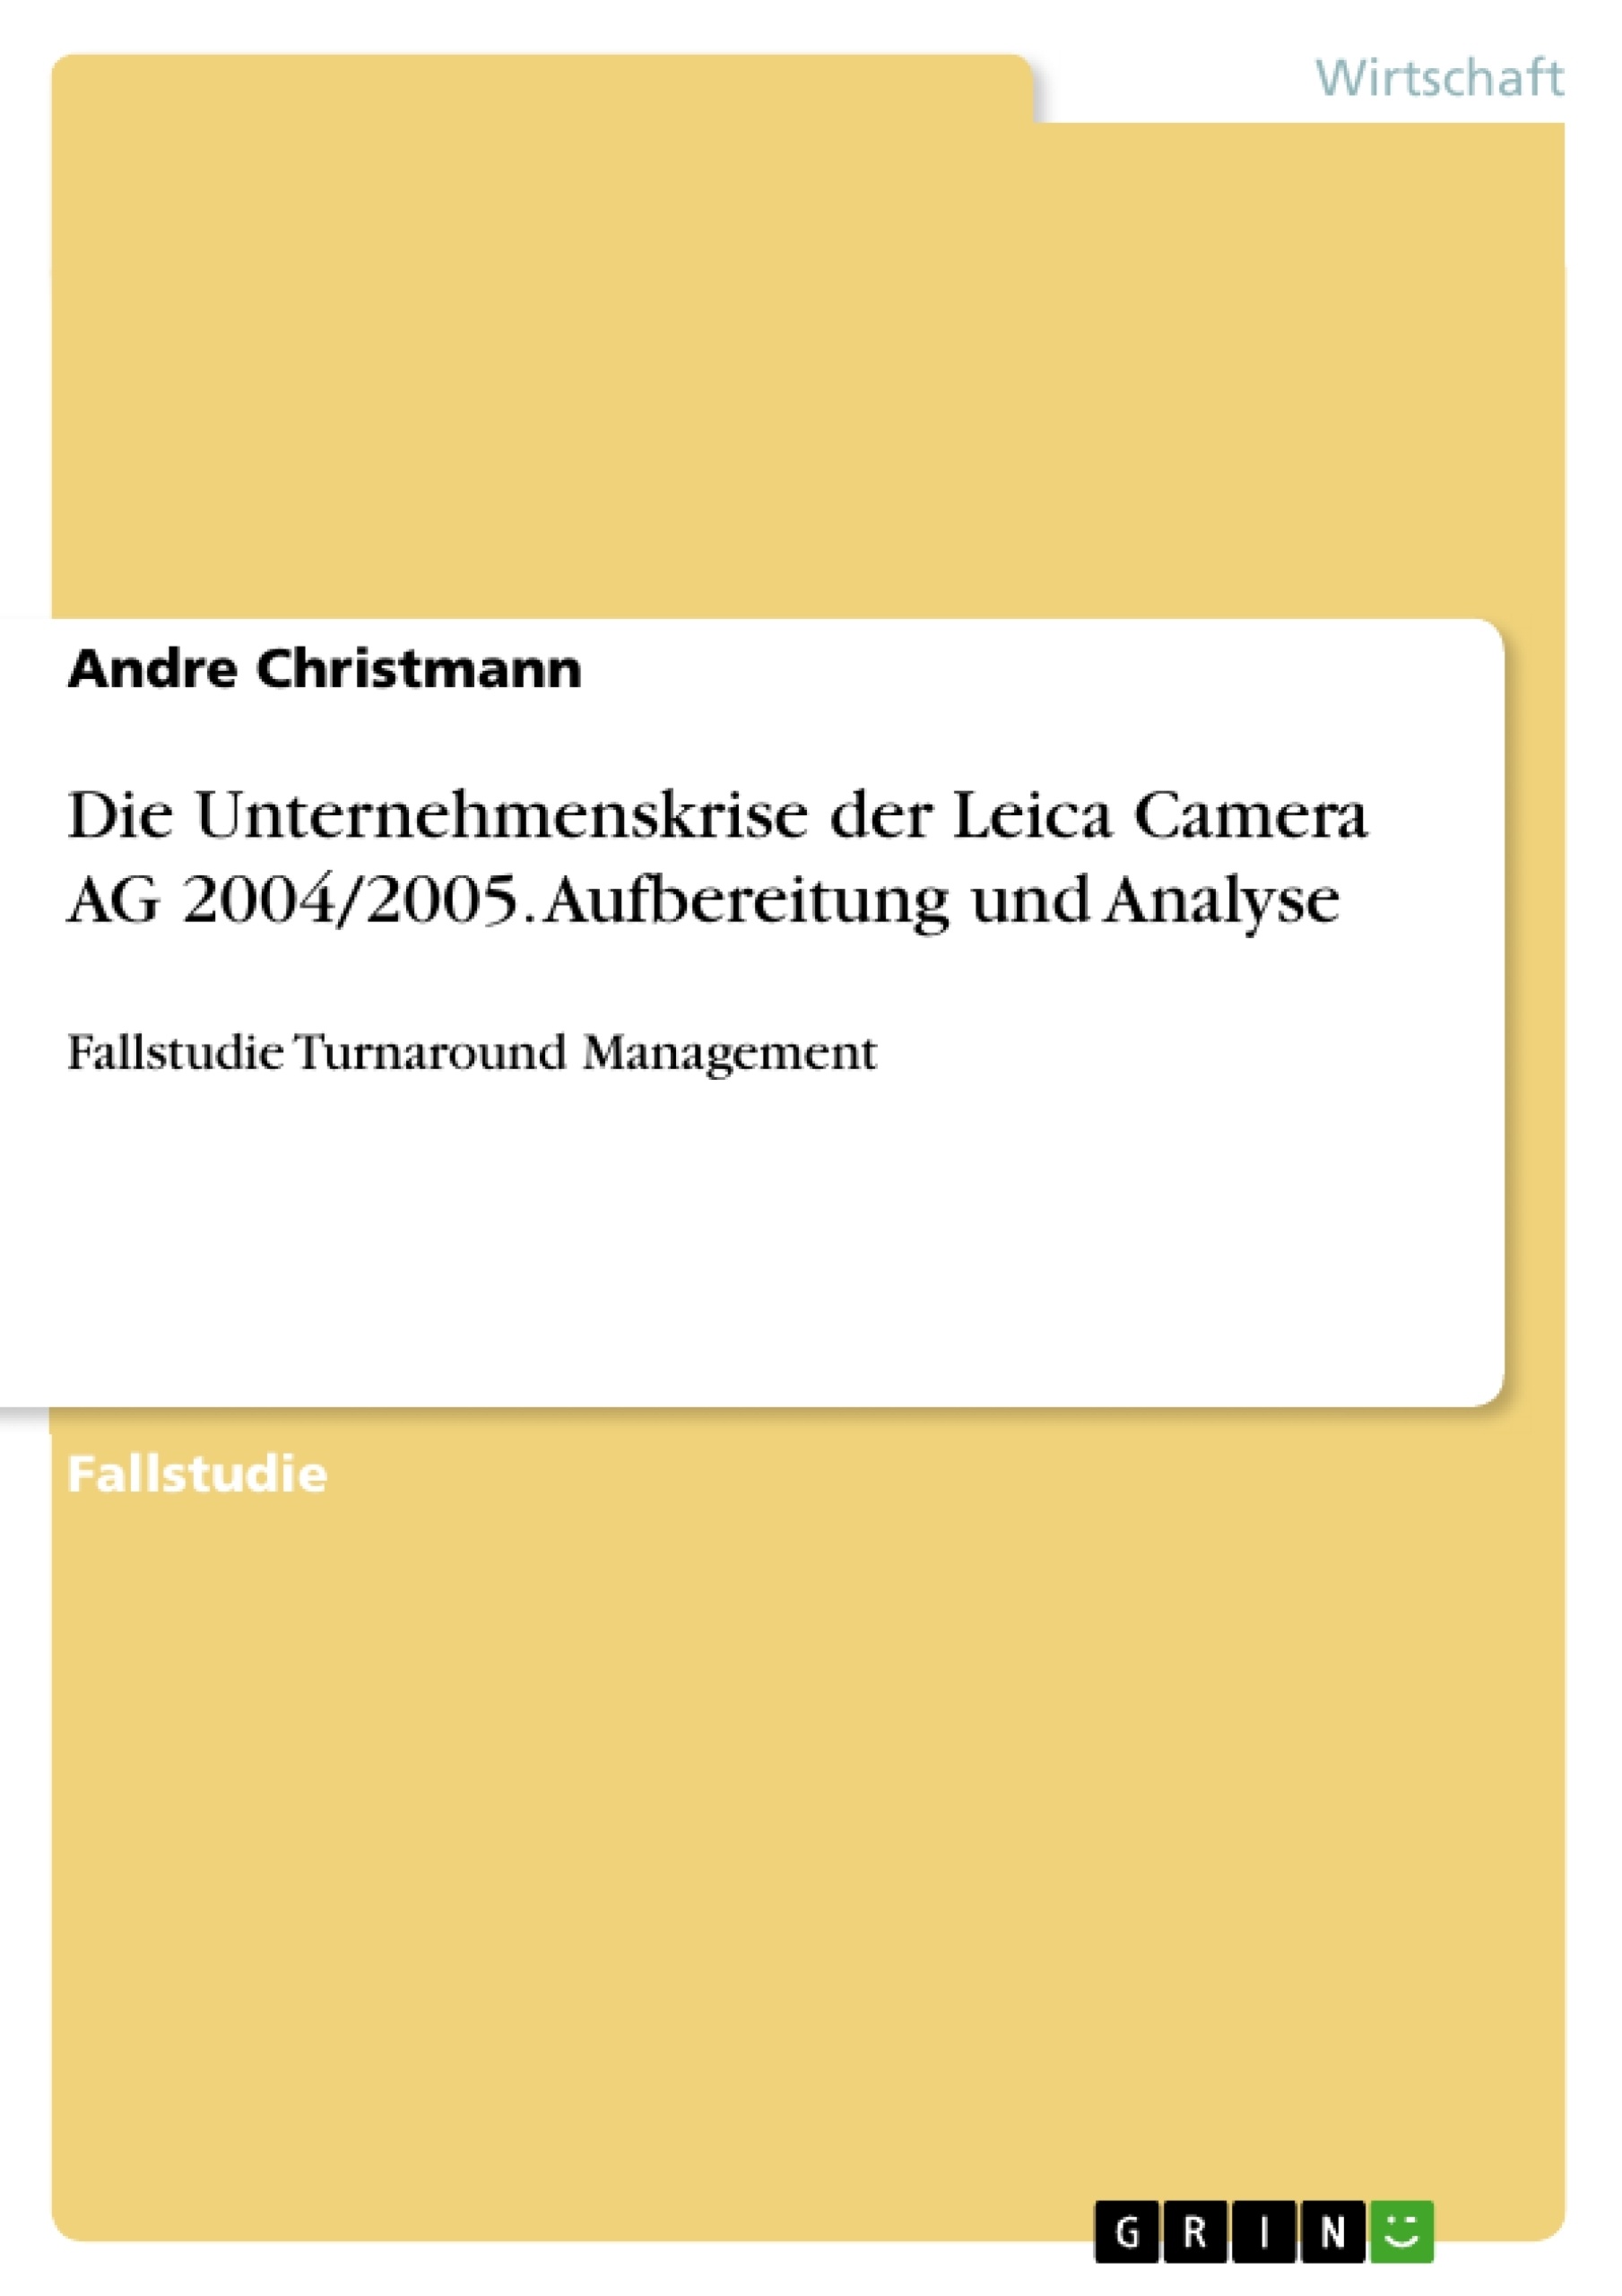 Volkswagen Umweltbericht 2003/2004 (deutsch) - Volkswagen AG